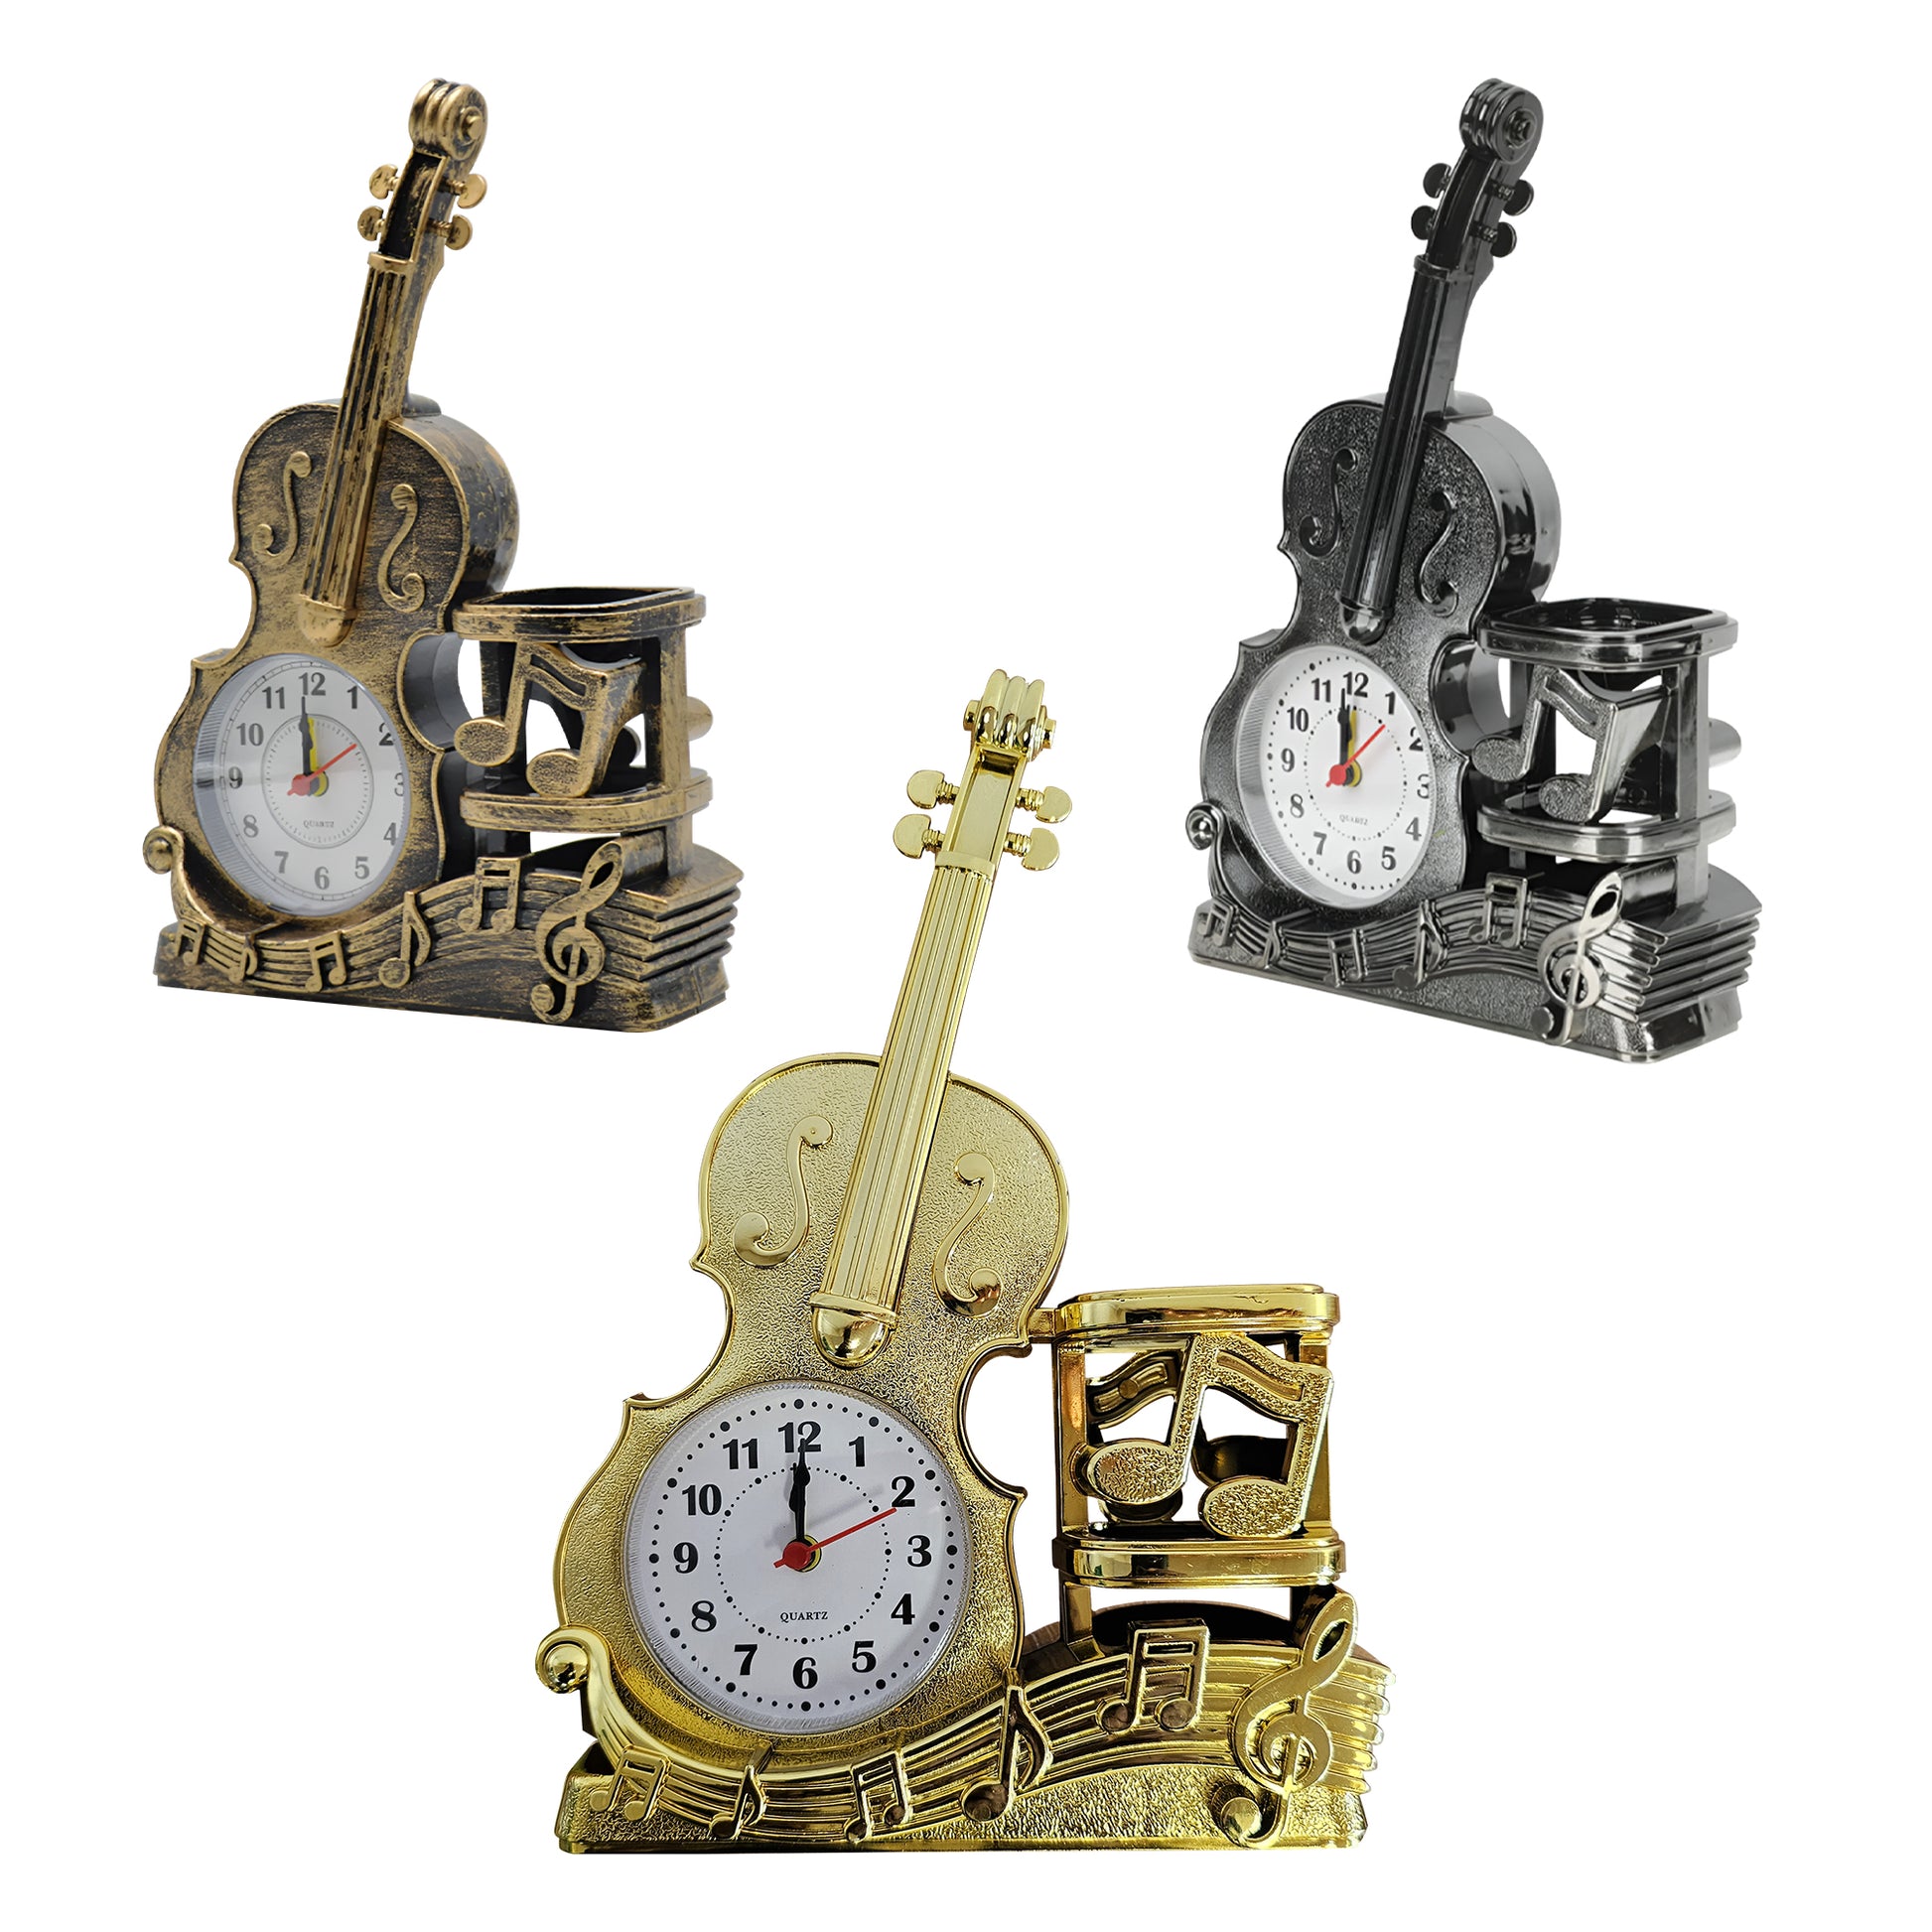 Violin Alarm Clock